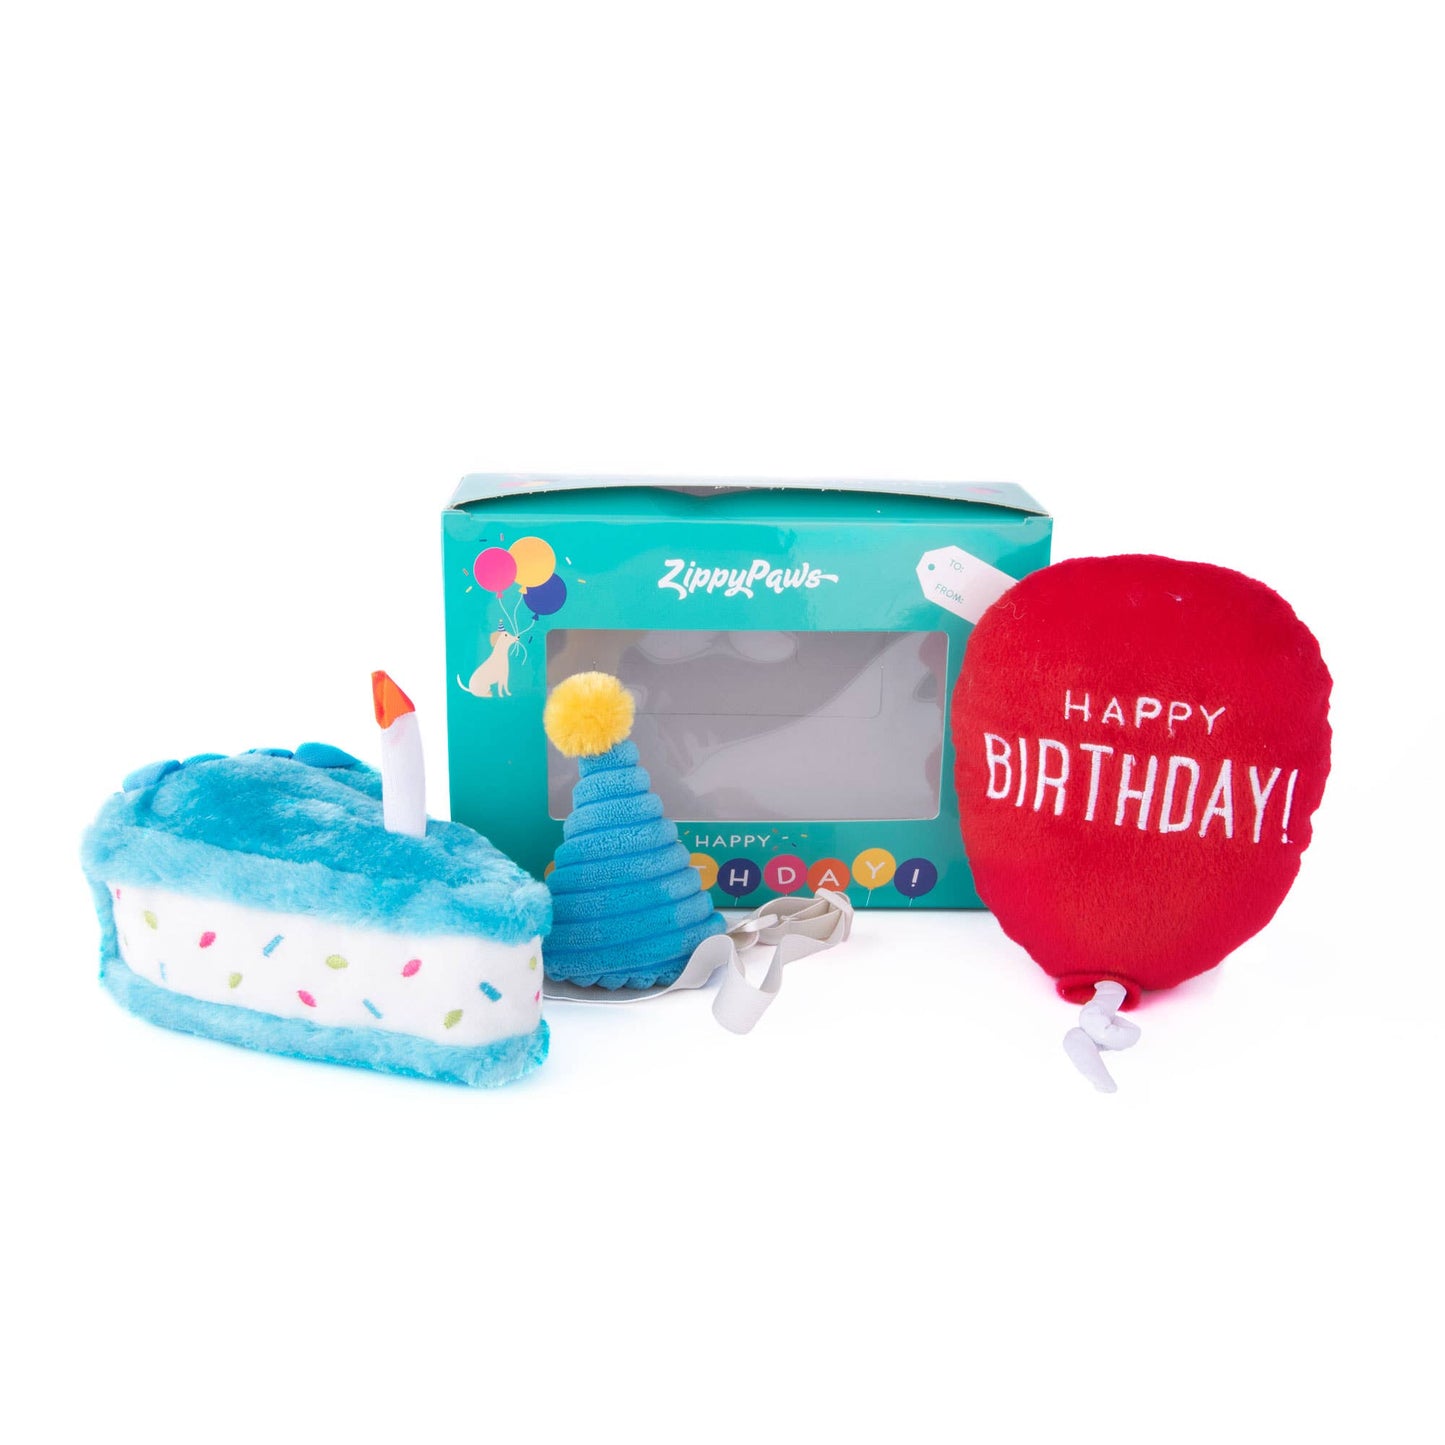 ZippyPaws Birthday Box 3pc